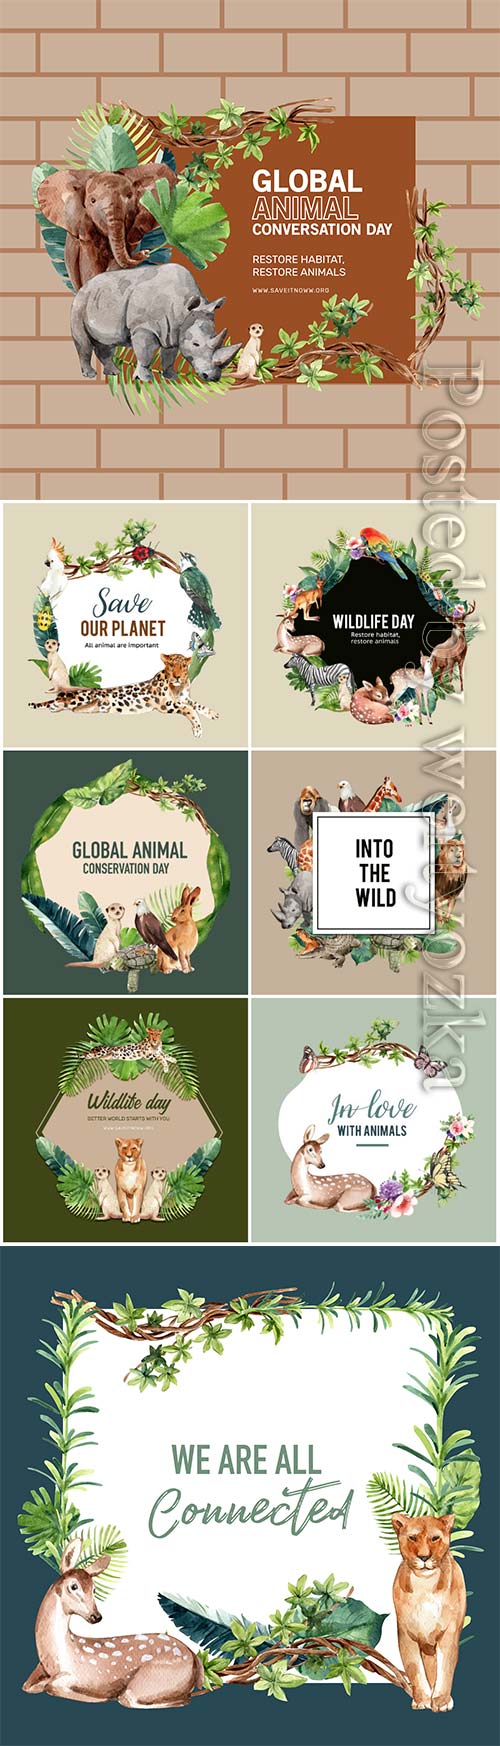 Zoo wreath design with eagle, gorilla, giraffe, rhino watercolor illustration